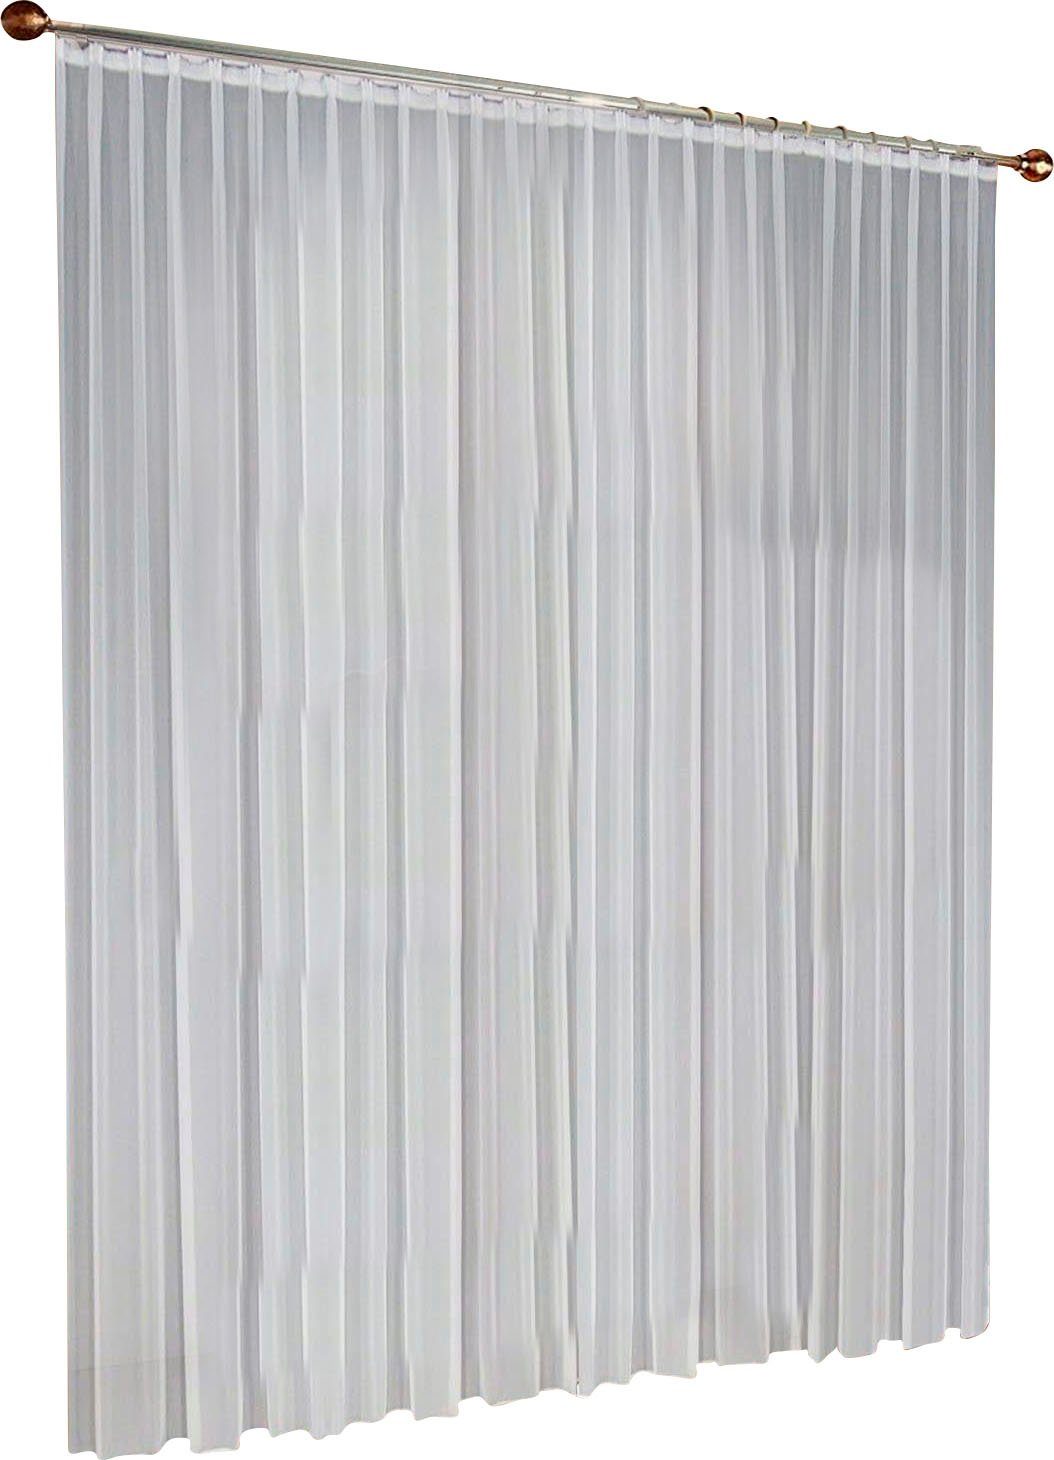 Weiß Voile Store maßgeschneidert Gardinen Vorhänge Vorhang Gardine nach Maß 